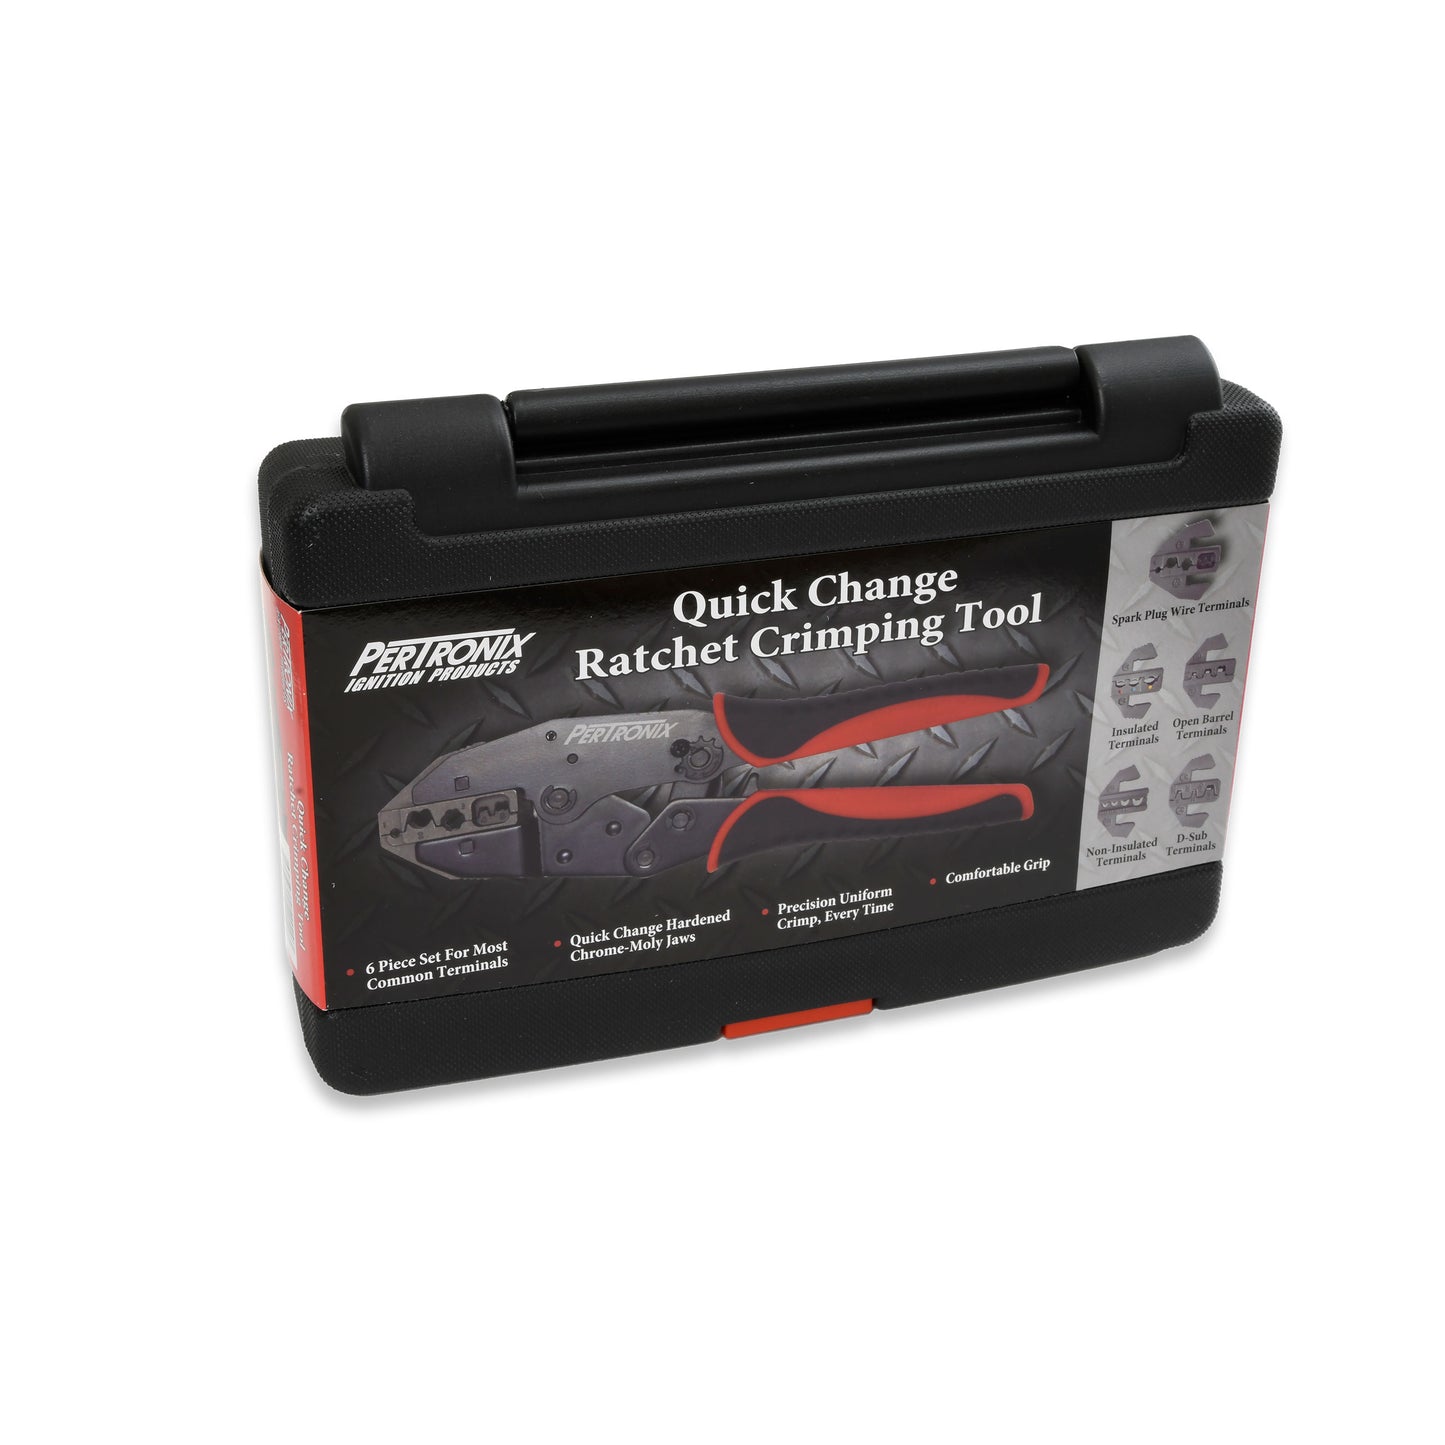 PerTronix T3001 Quick Change 6 Piece Ratchet Crimp Tool Kit